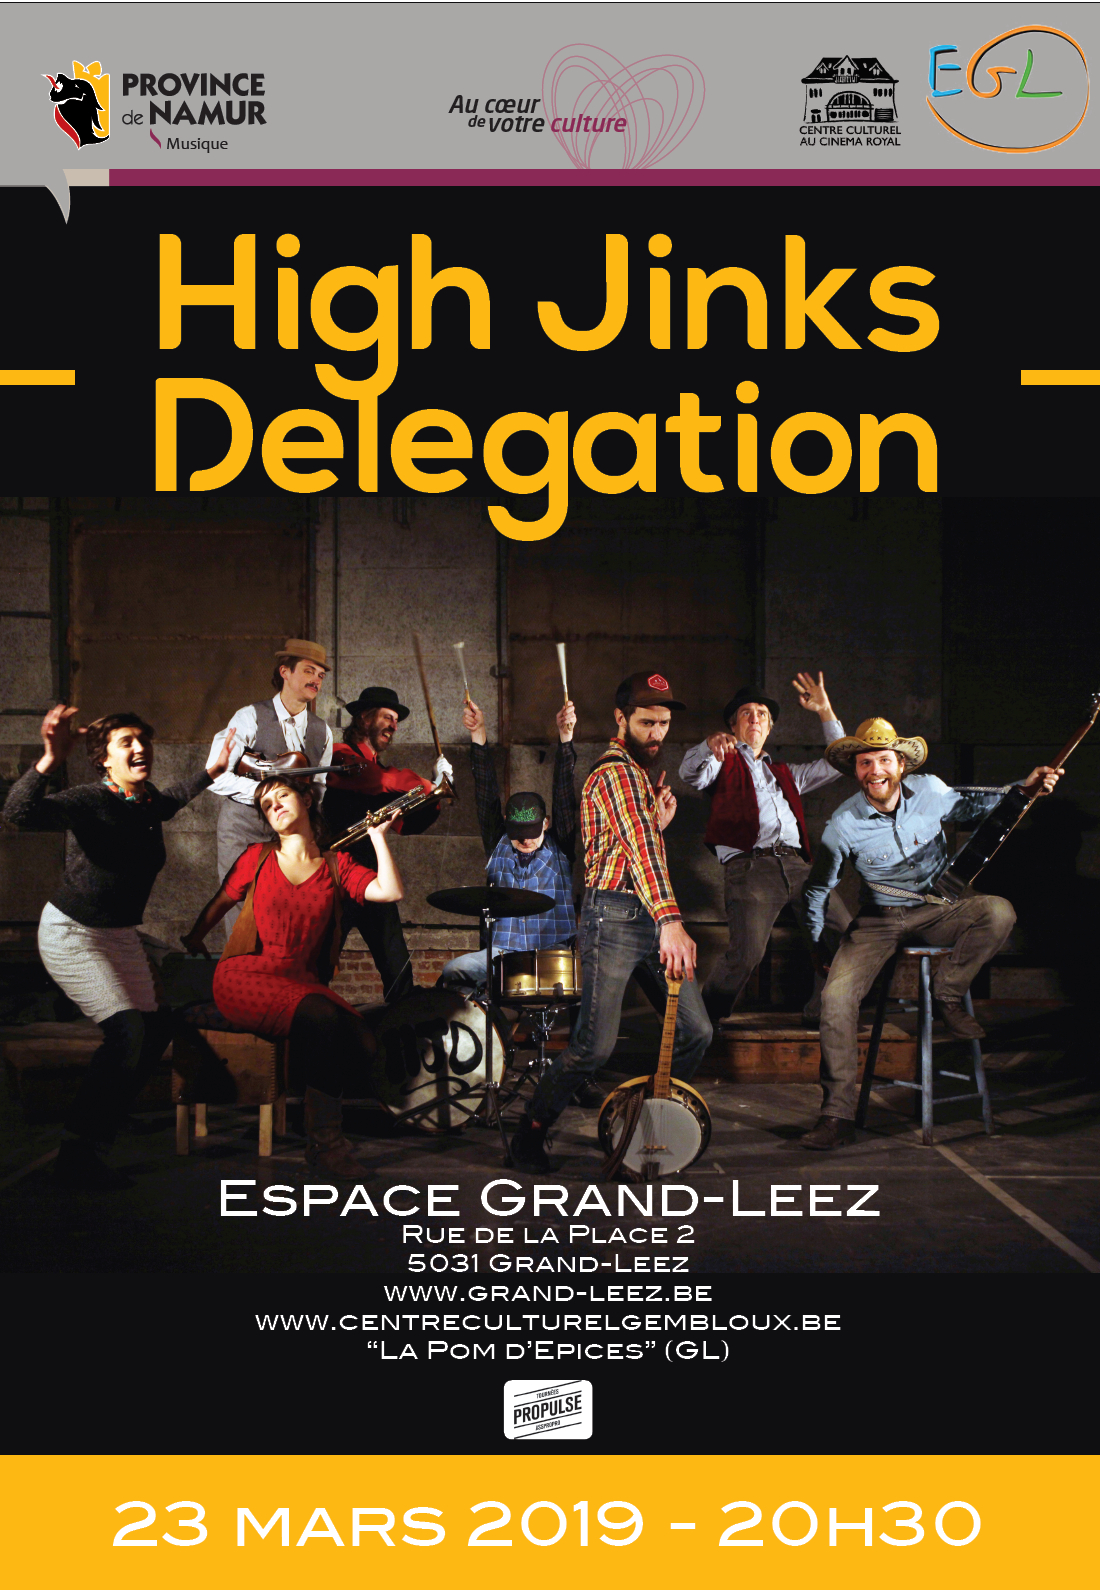 High Jinks Delegation